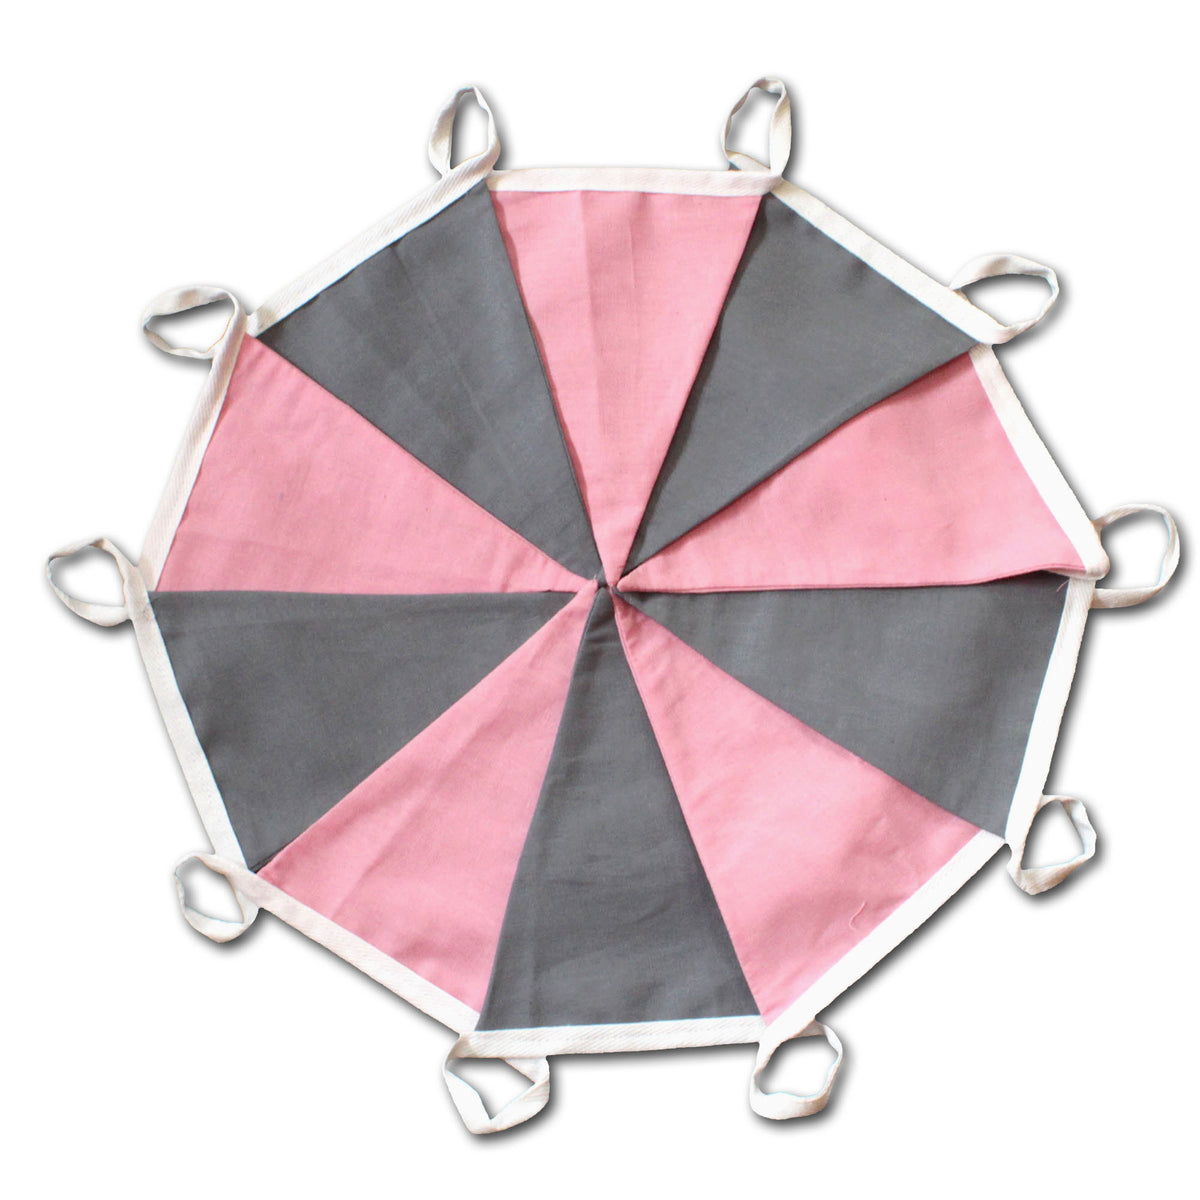 Wimpelkette aus doppellagigem Stoff in Rosa und Grau, 10 Fahnen, 2,5 m